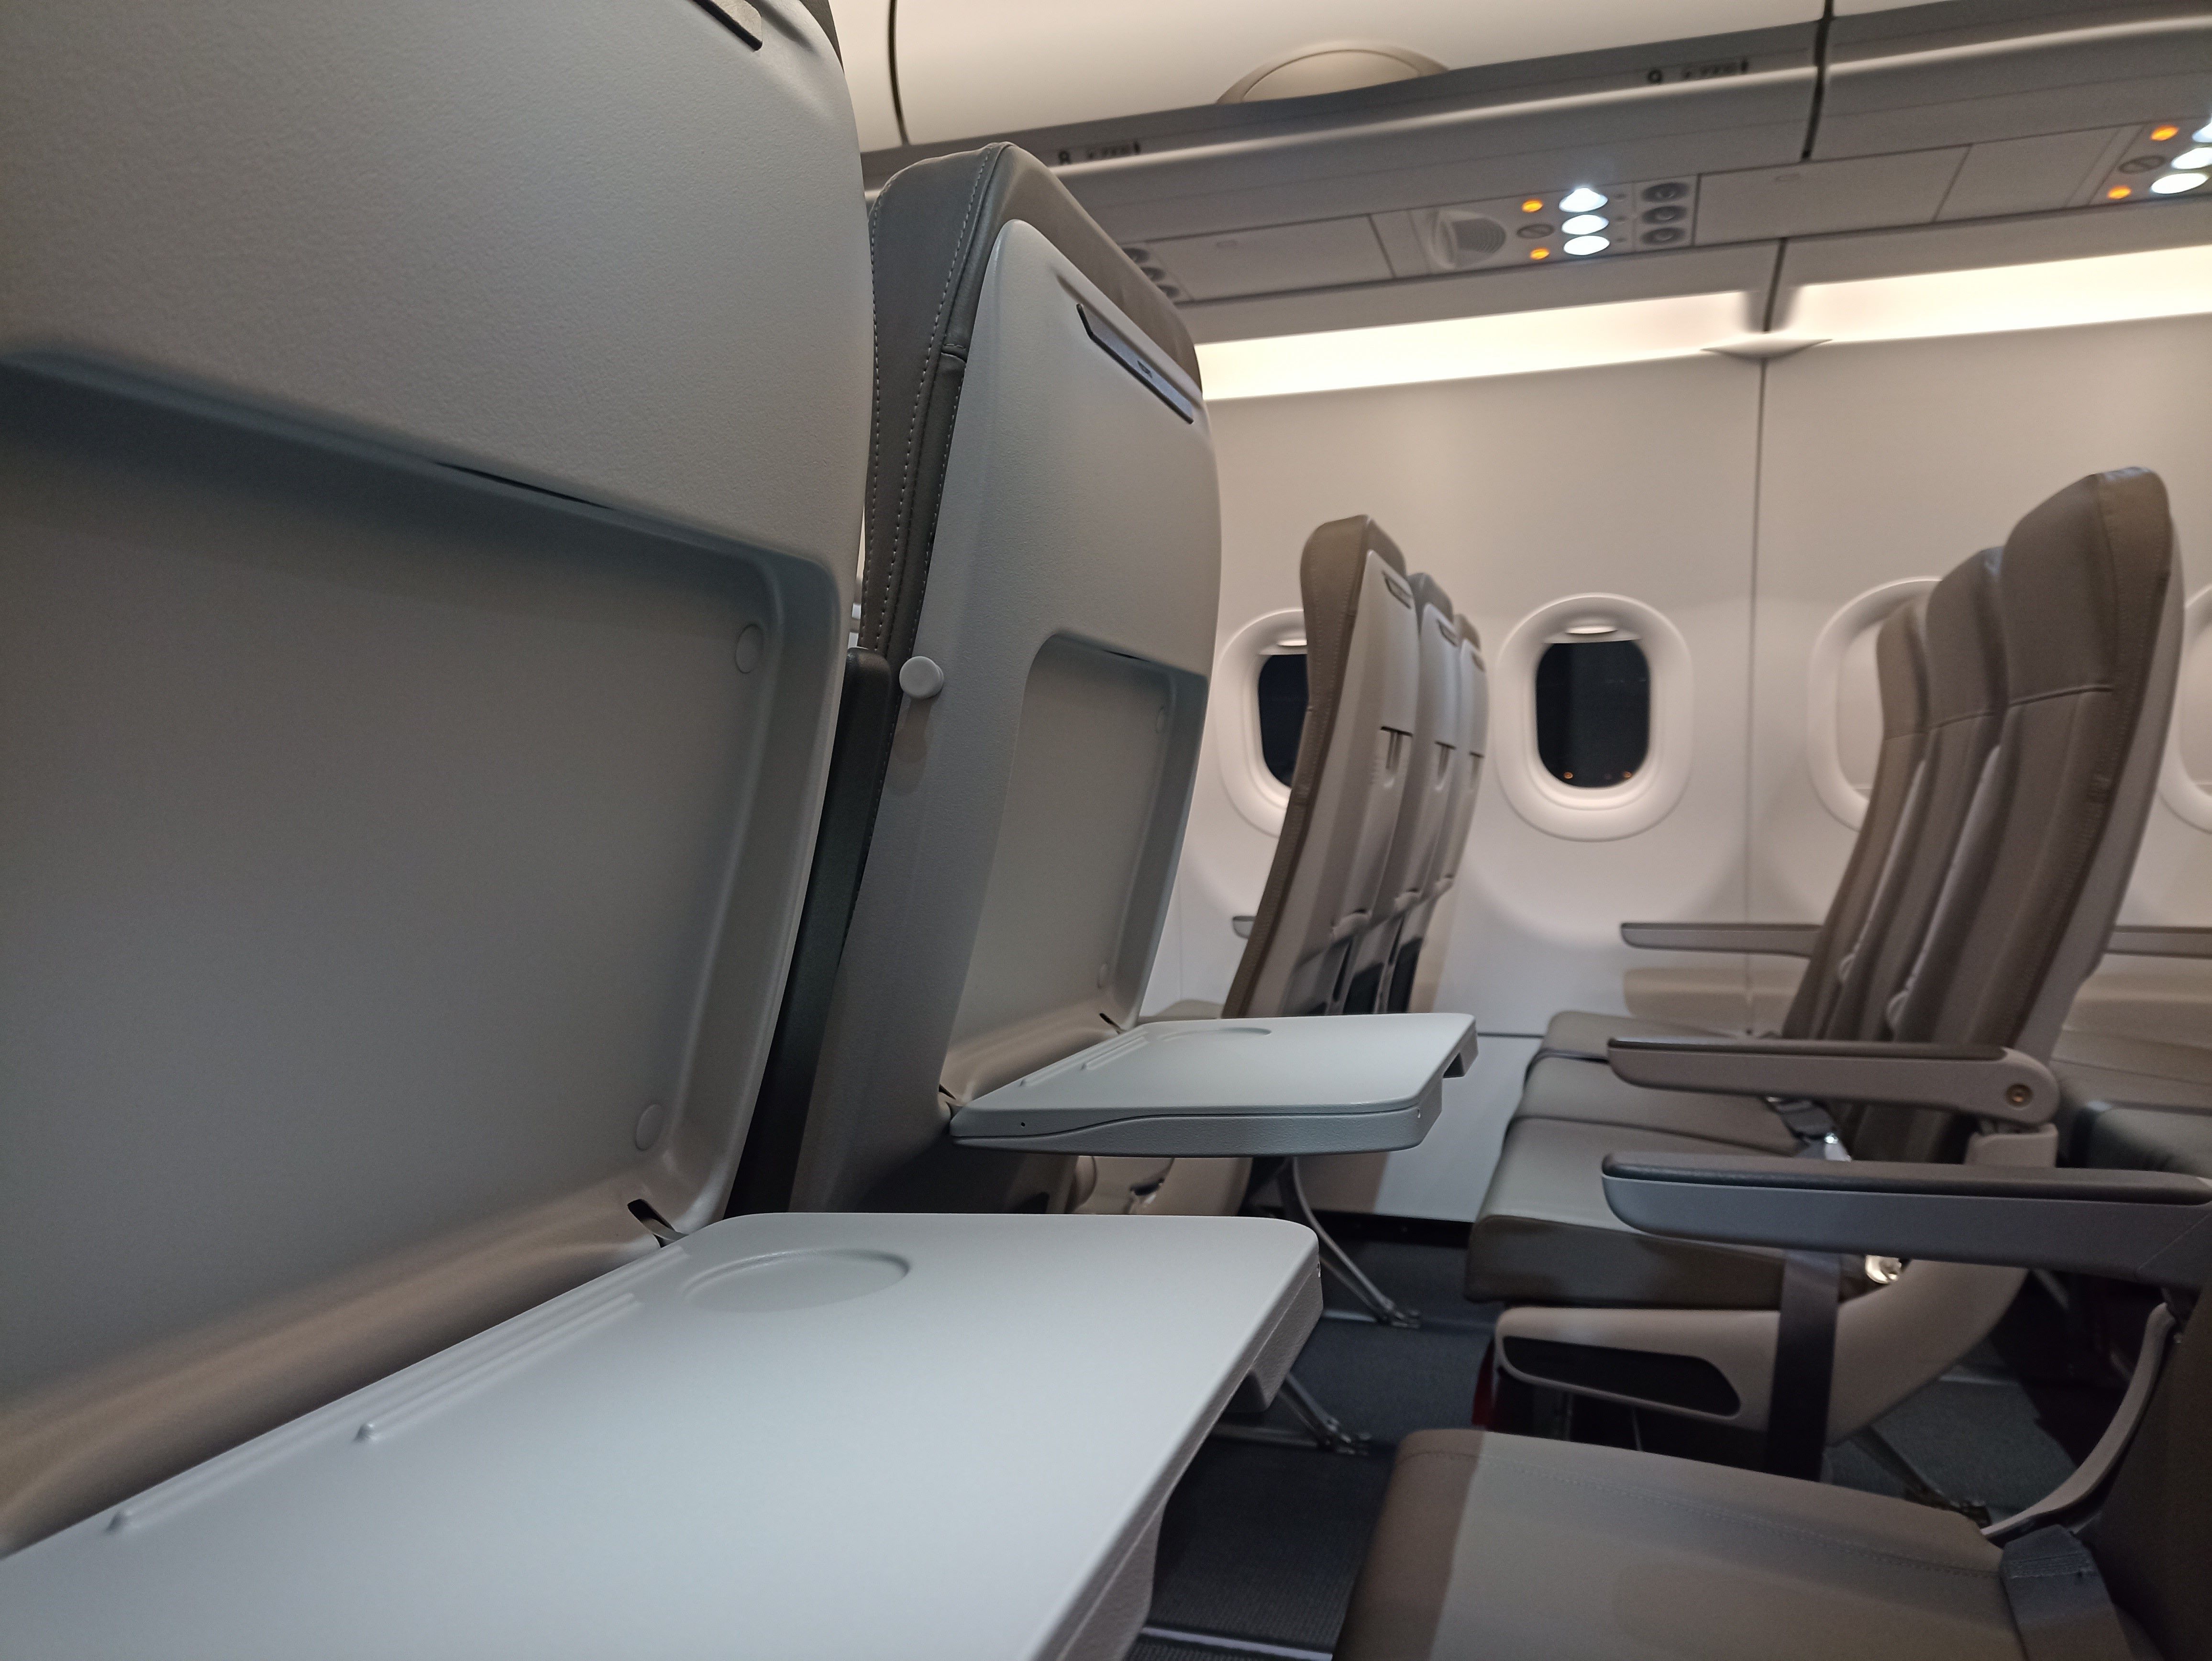 Recaro Debuts SL3710 Seat On JetSMART's Airbus A321neo